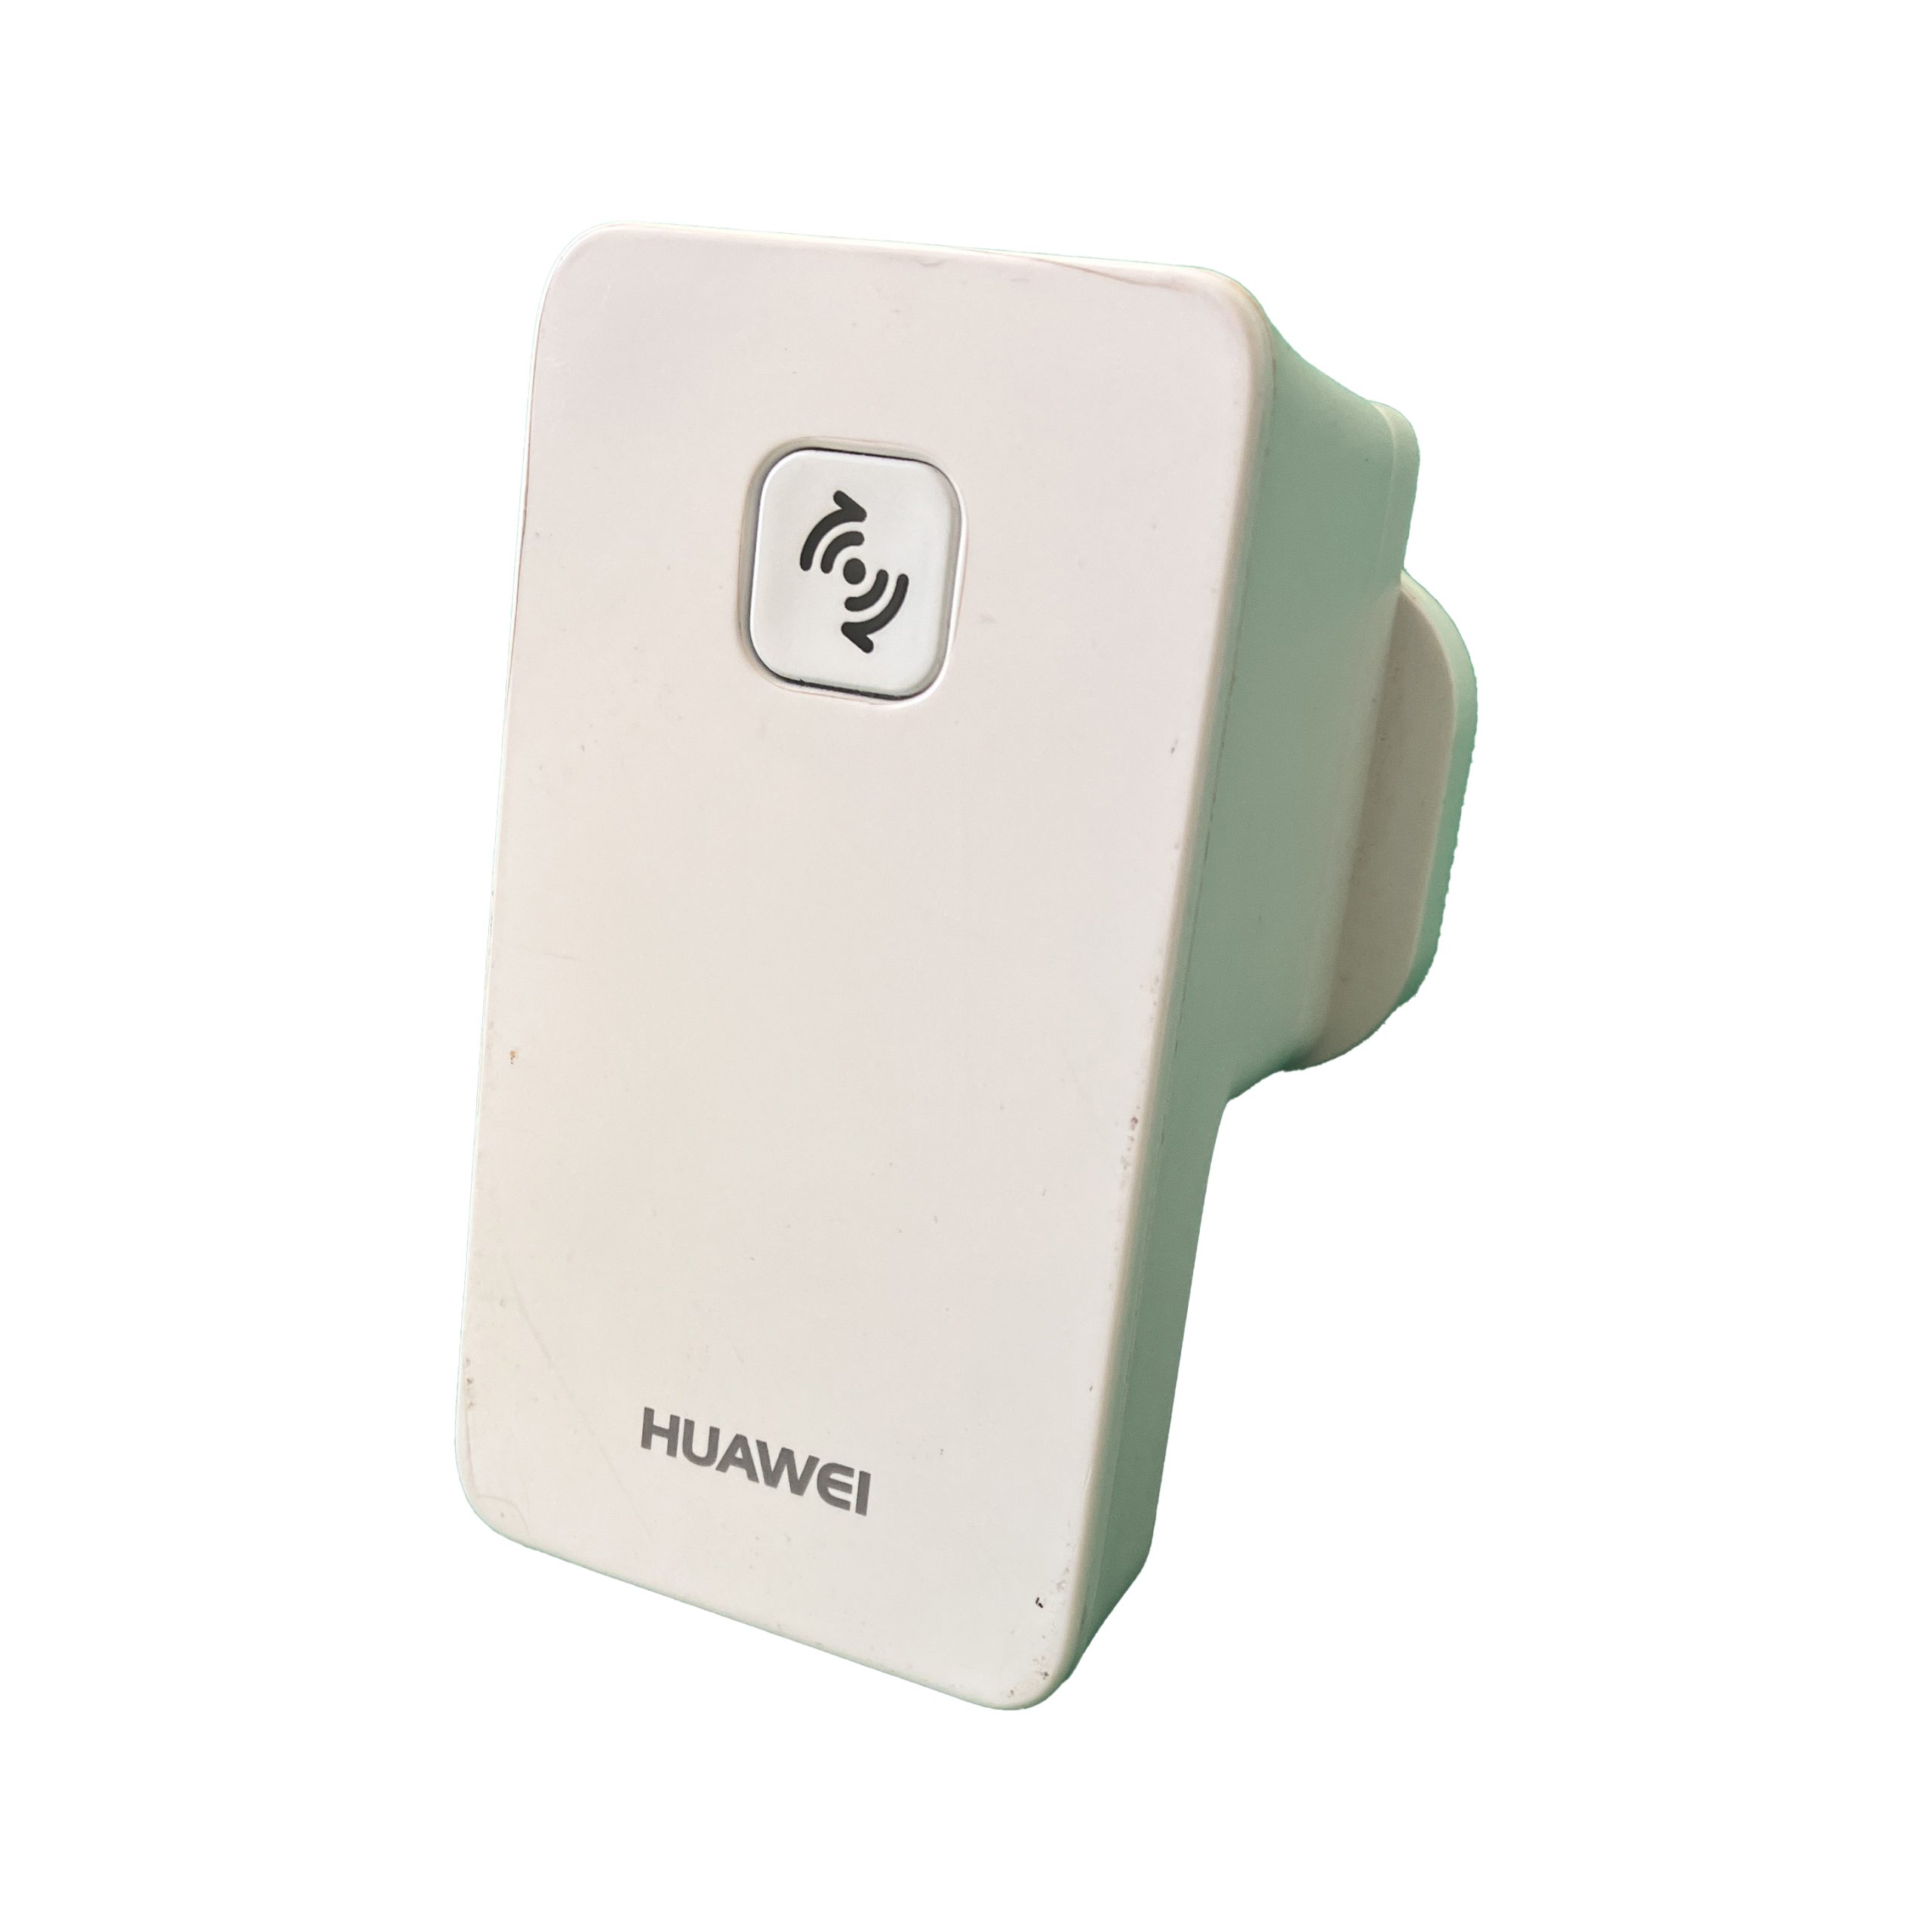 Huawei WS320 Wi-Fi Repeater Mini Wifi amplifier Range Extender - UK 3-pin Plug